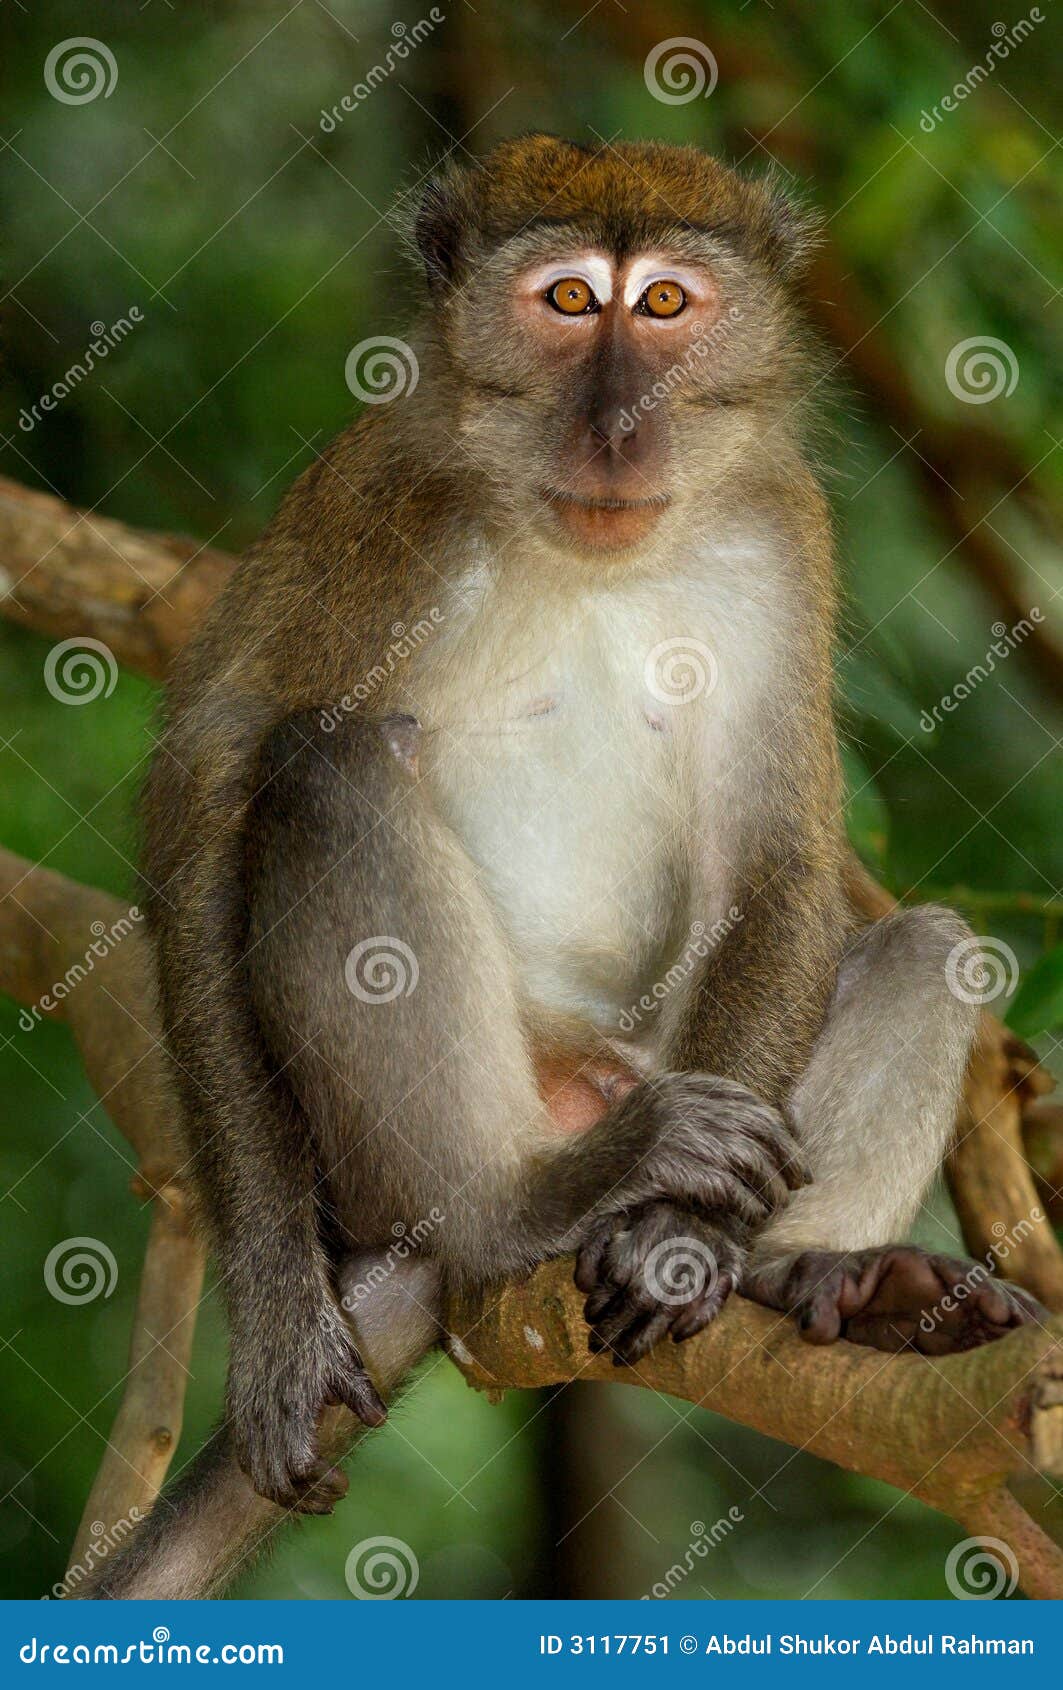 Monkey Pose Stock Image - Image: 3117751